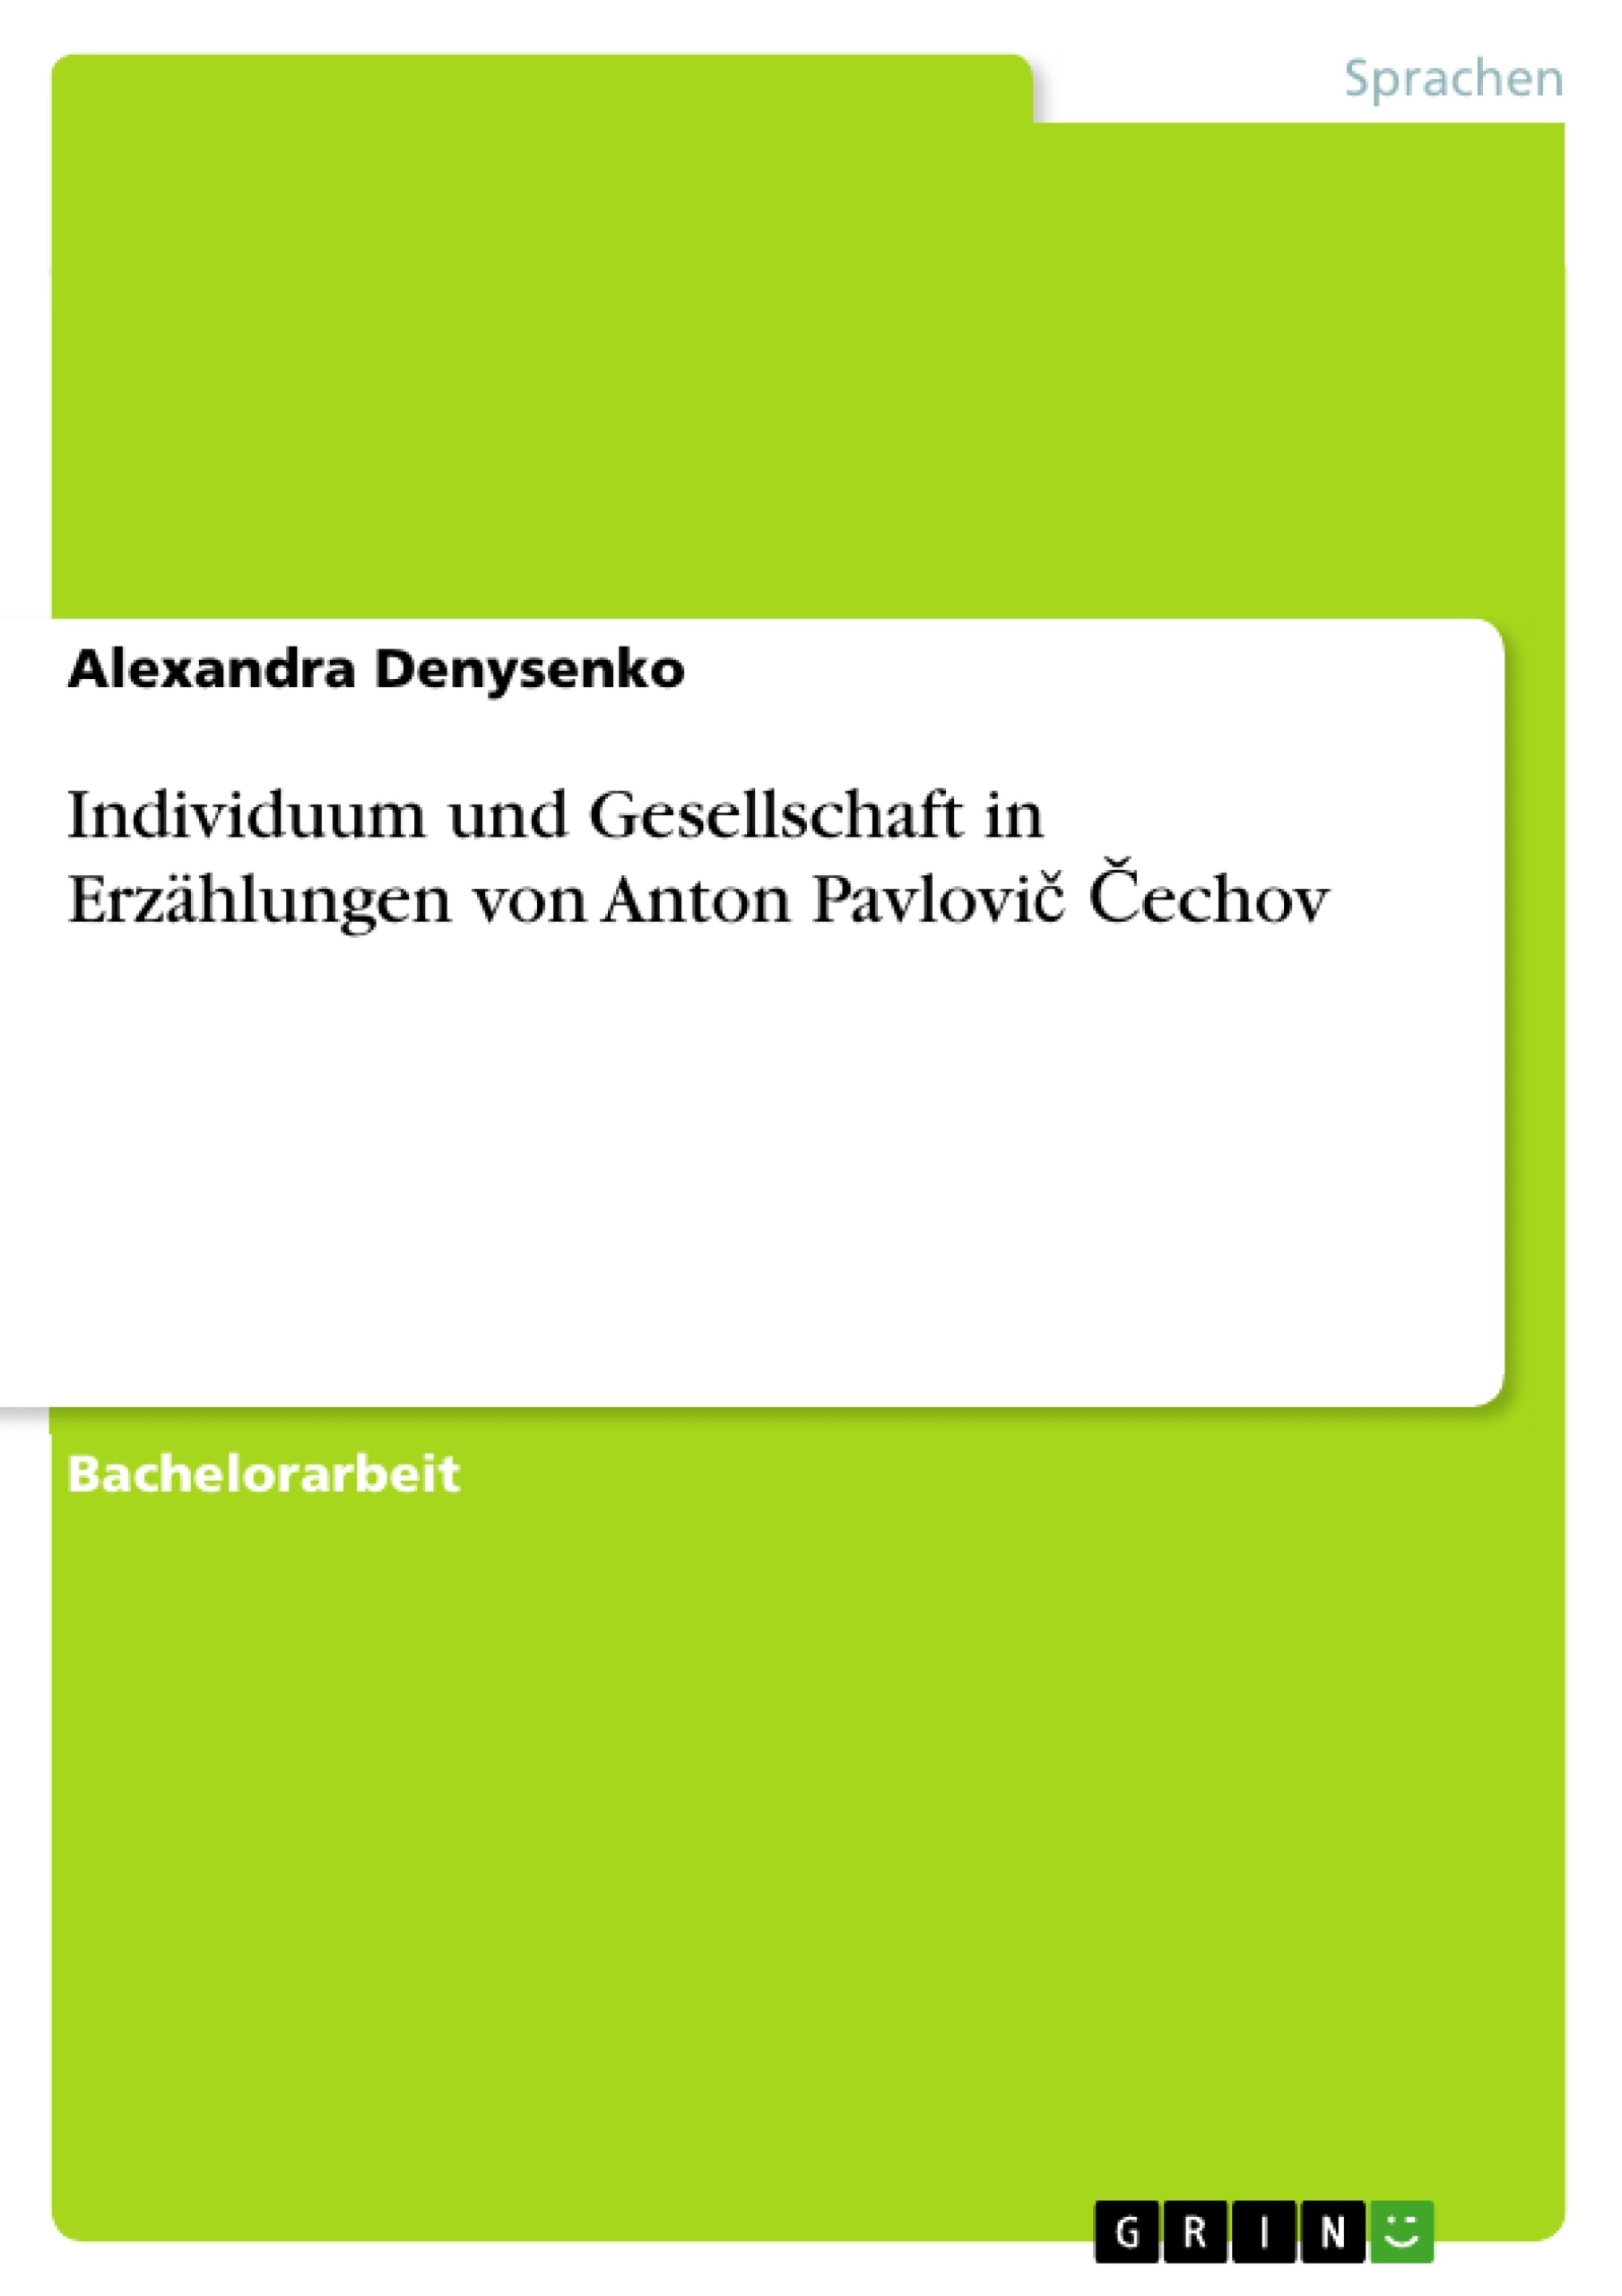 Título: Individuum und Gesellschaft in Erzählungen von Anton Pavlovič Čechov